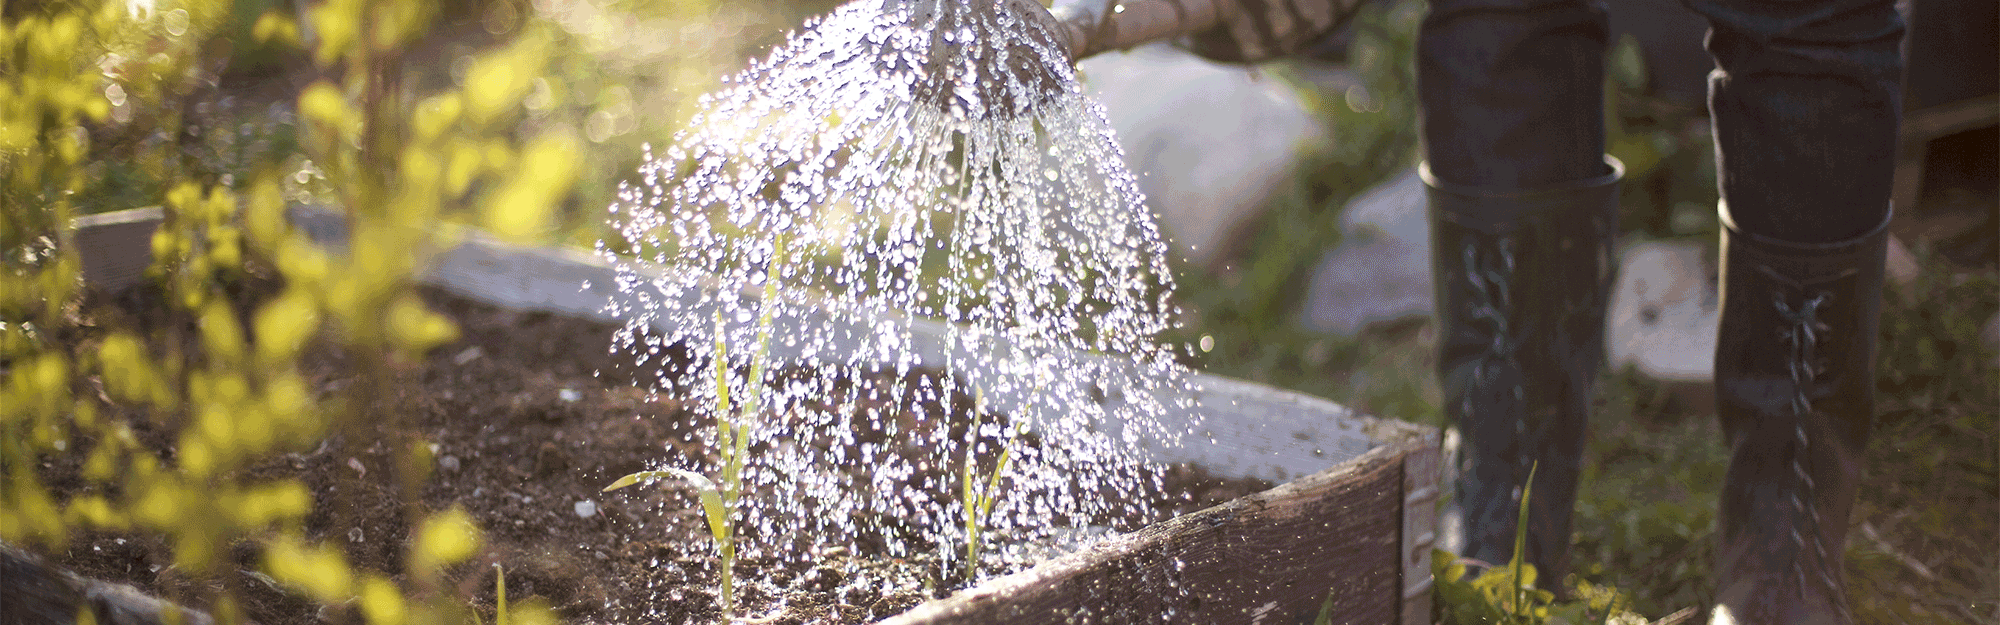 Vattnar med vattenkanna i trädgården